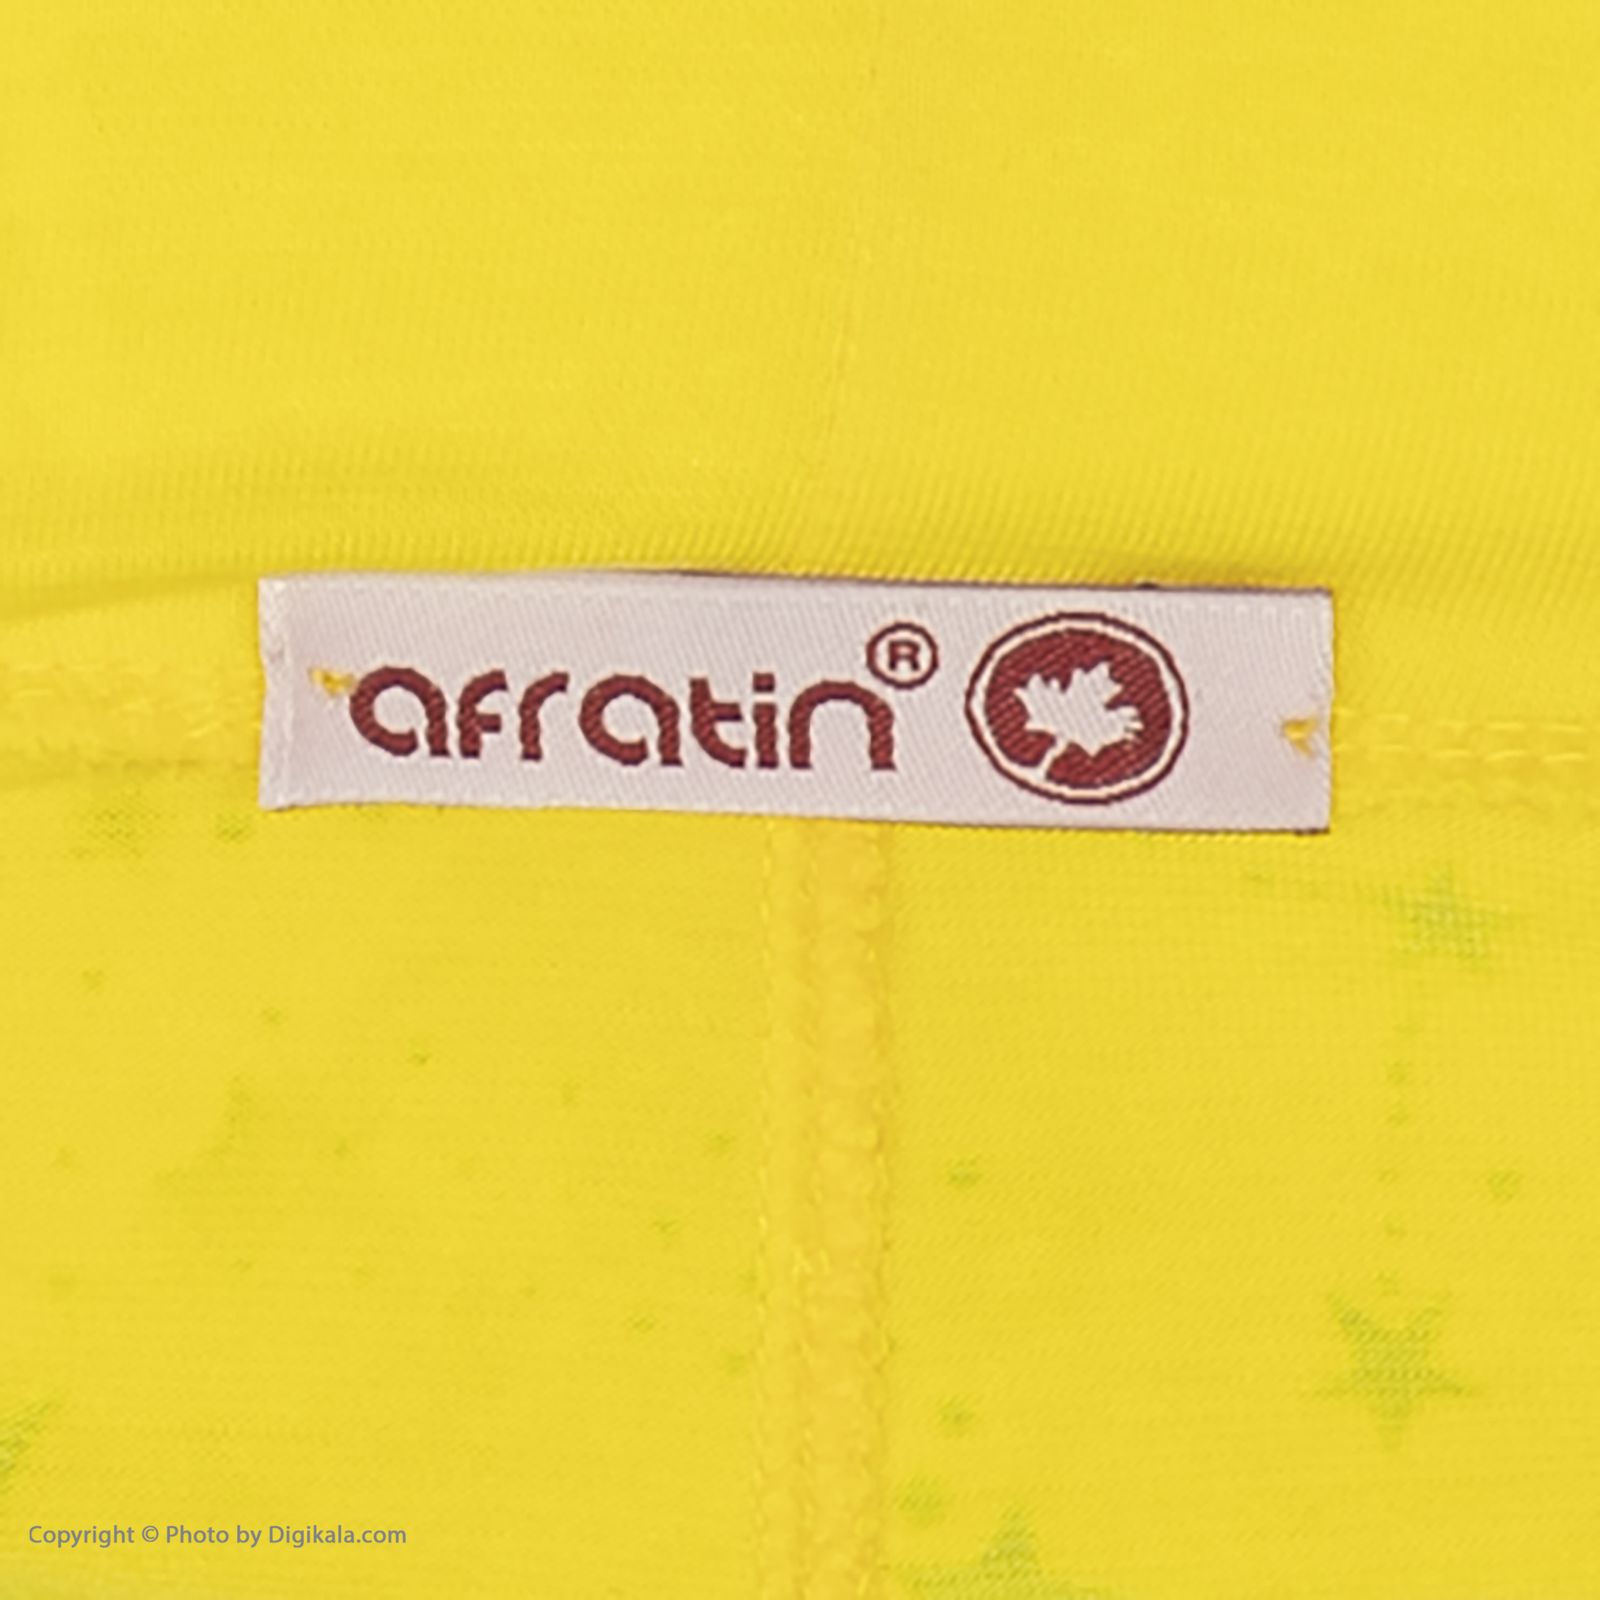 ست تی شرت و شلوارک زنانه افراتین مدل Dream کد 6558 رنگ زرد -  - 10